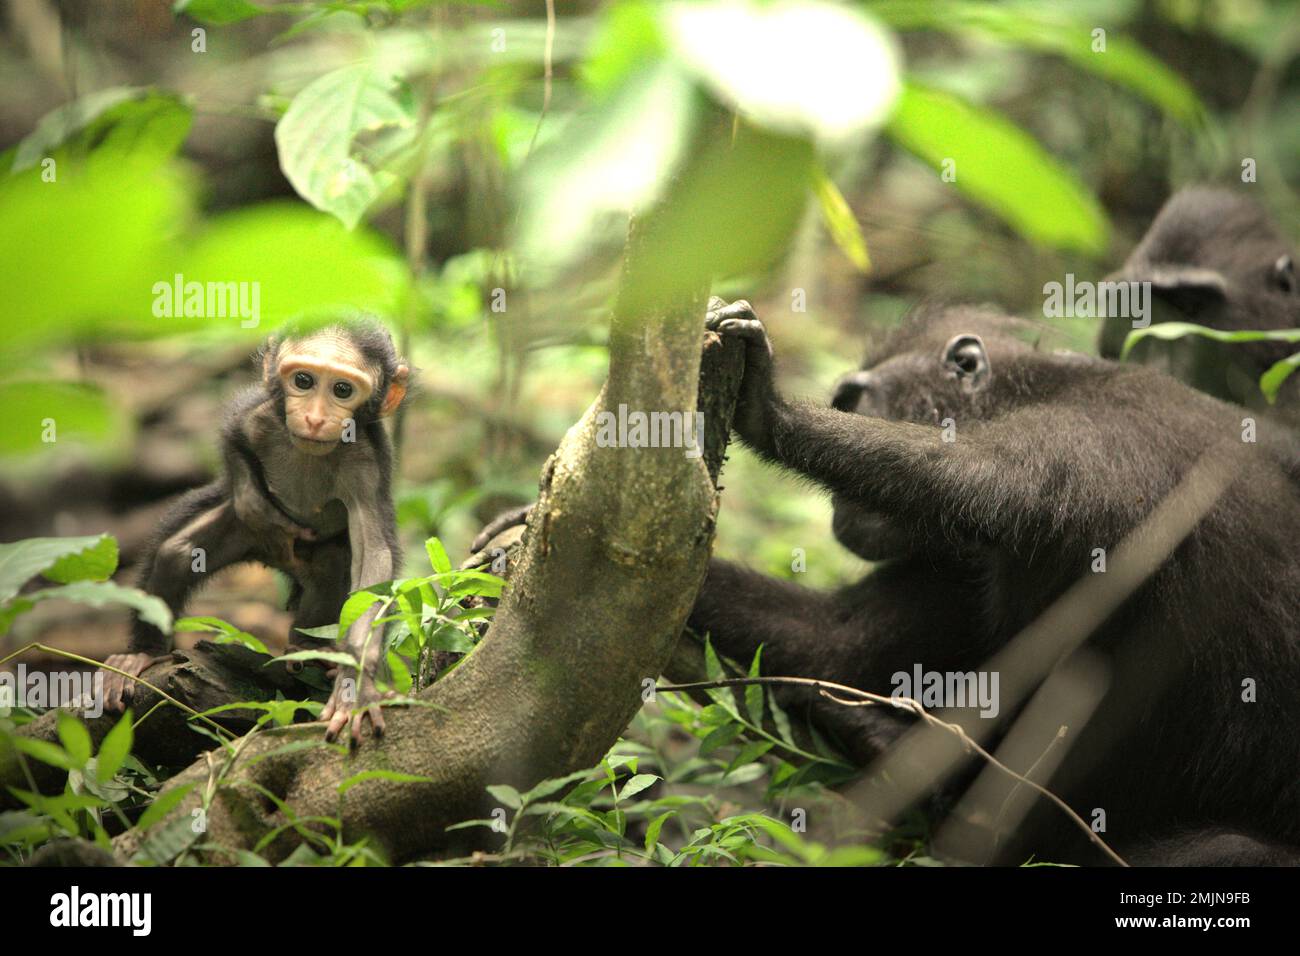 Ein neugieriger Säugling von Sulawesi-Schwarzkammmakaken (Macaca nigra) entfernt sich während der Entwöhnungszeit von seiner Mutter in ihrem natürlichen Lebensraum, dem Tiefland-Regenwald im Naturschutzgebiet Tangkoko, North Sulawesi, Indonesien. Die Entwöhnungsphase eines makaken Säuglings – im Alter von 5 Monaten bis zum Alter von 1 Jahren – ist die früheste Lebensphase, in der die Säuglingssterblichkeit am höchsten ist. Primate Wissenschaftler des Macaca Nigra Project beobachteten, dass '17 der 78 Säuglinge (22%) im ersten Lebensjahr verschwanden. Acht dieser 17 Toten wurden mit großen Stichwunden gefunden. Das Klima... Stockfoto